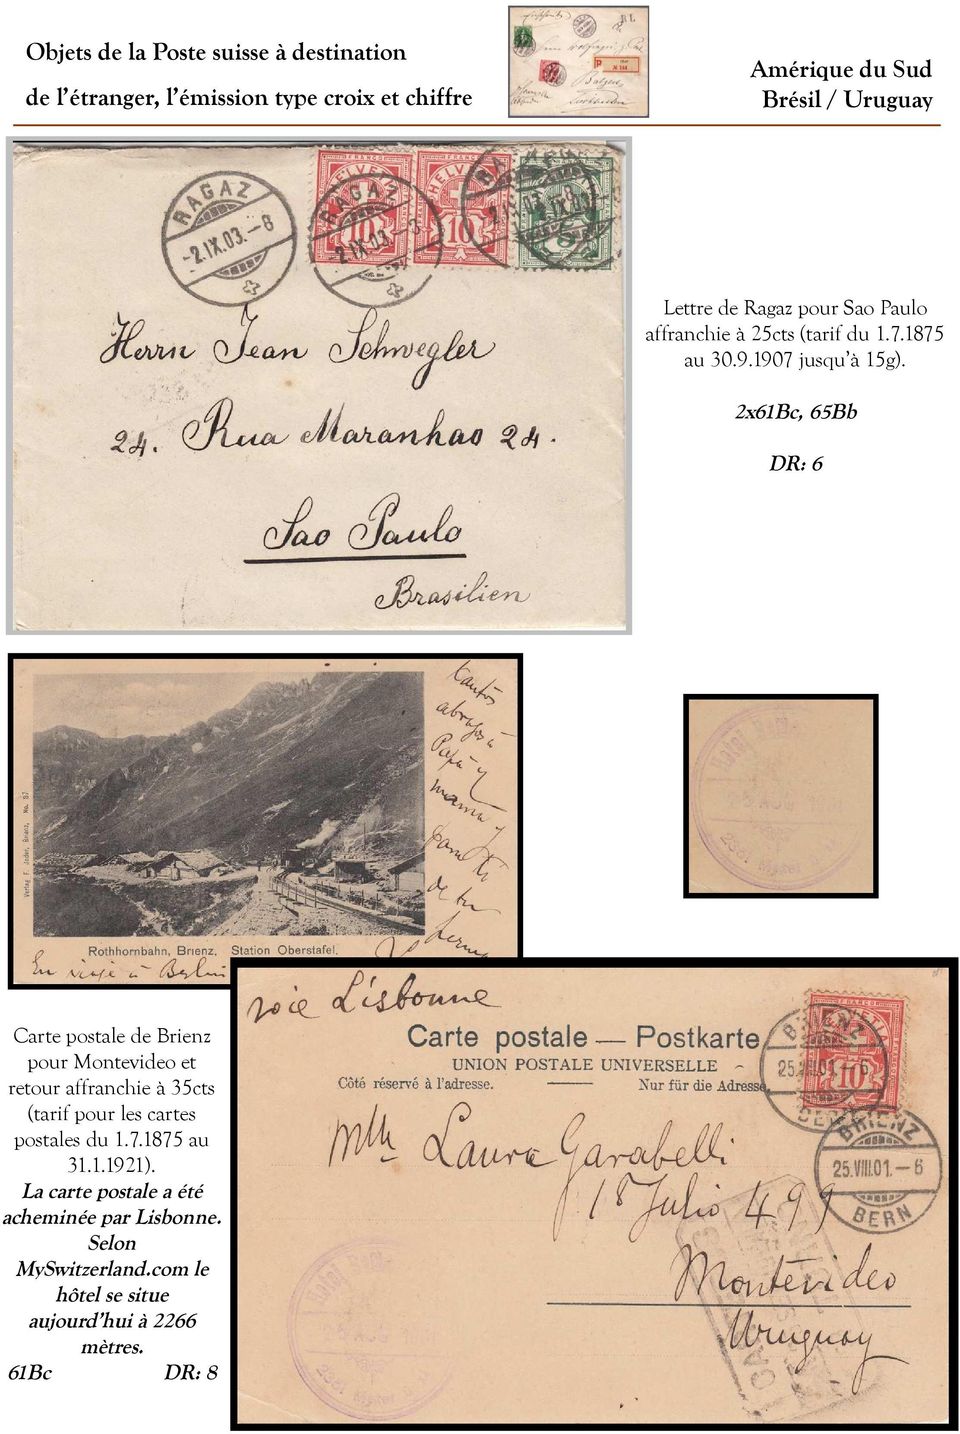 2x61Bc, 65Bb DR: 6 Carte postale de Brienz pour Montevideo et retour affranchie à 35cts (tarif pour